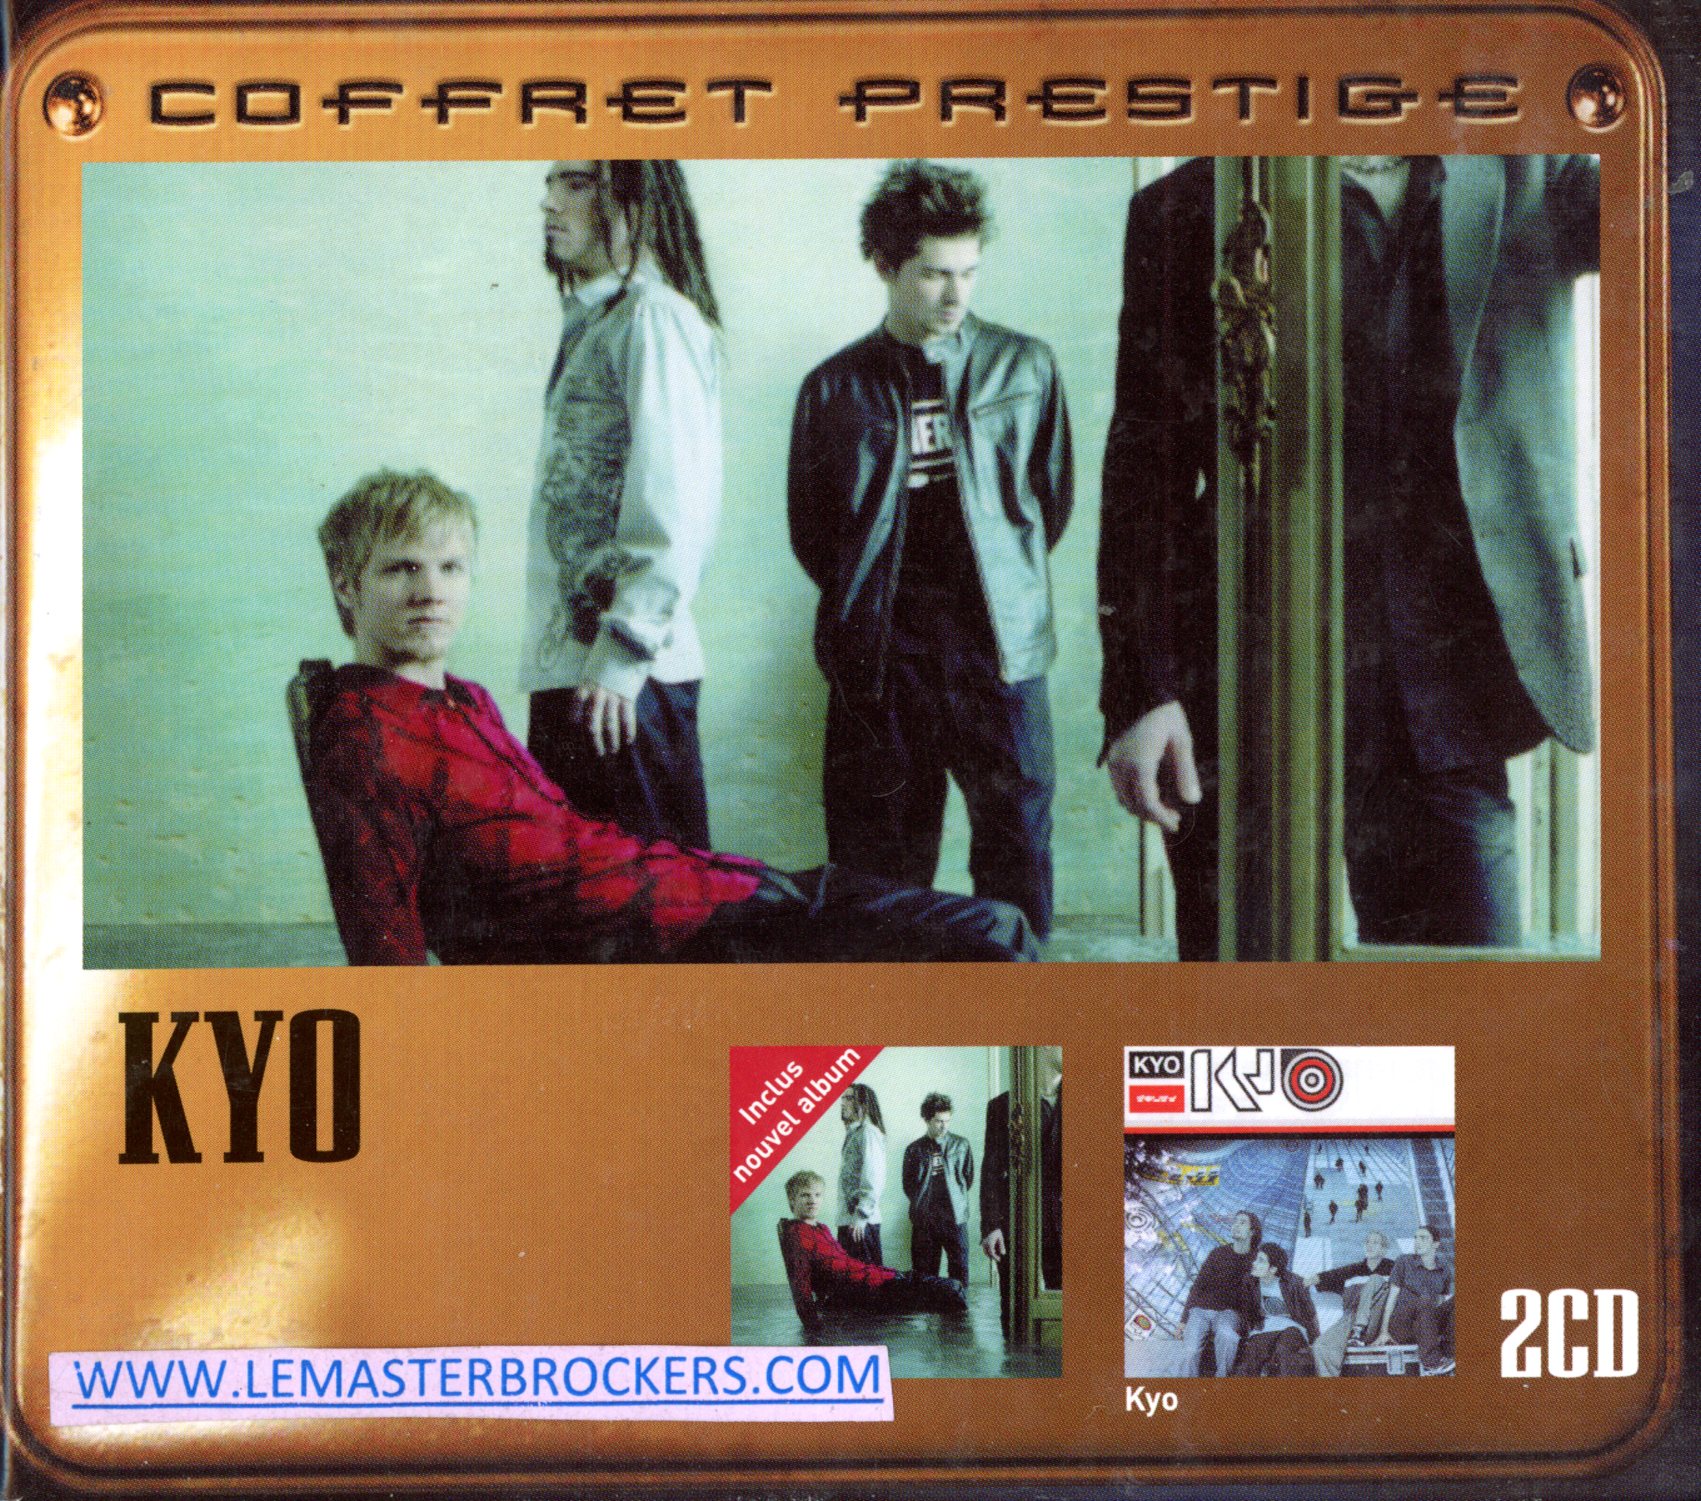 COFFRET PRESTIGE KYO - LE CHEMIN - ALBUM CD